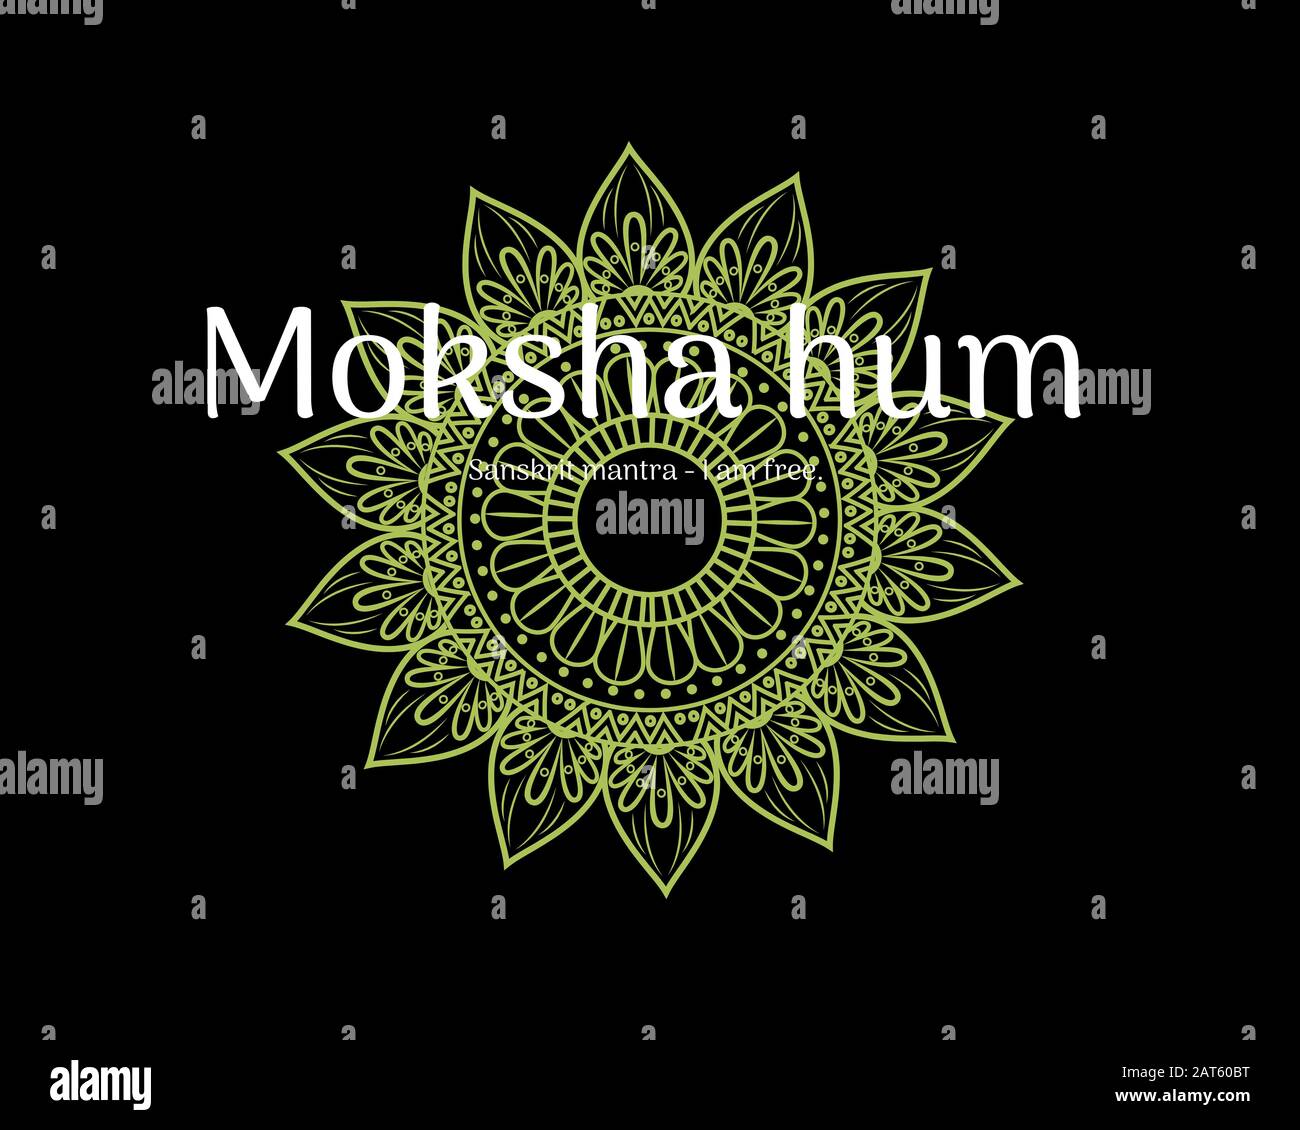 Hinduismus, Glaube, Meditation, Frieden, Moksha Hum Sanskrit Mantra, was übersetzt "Ich bin frei" bedeutet. Stockfoto